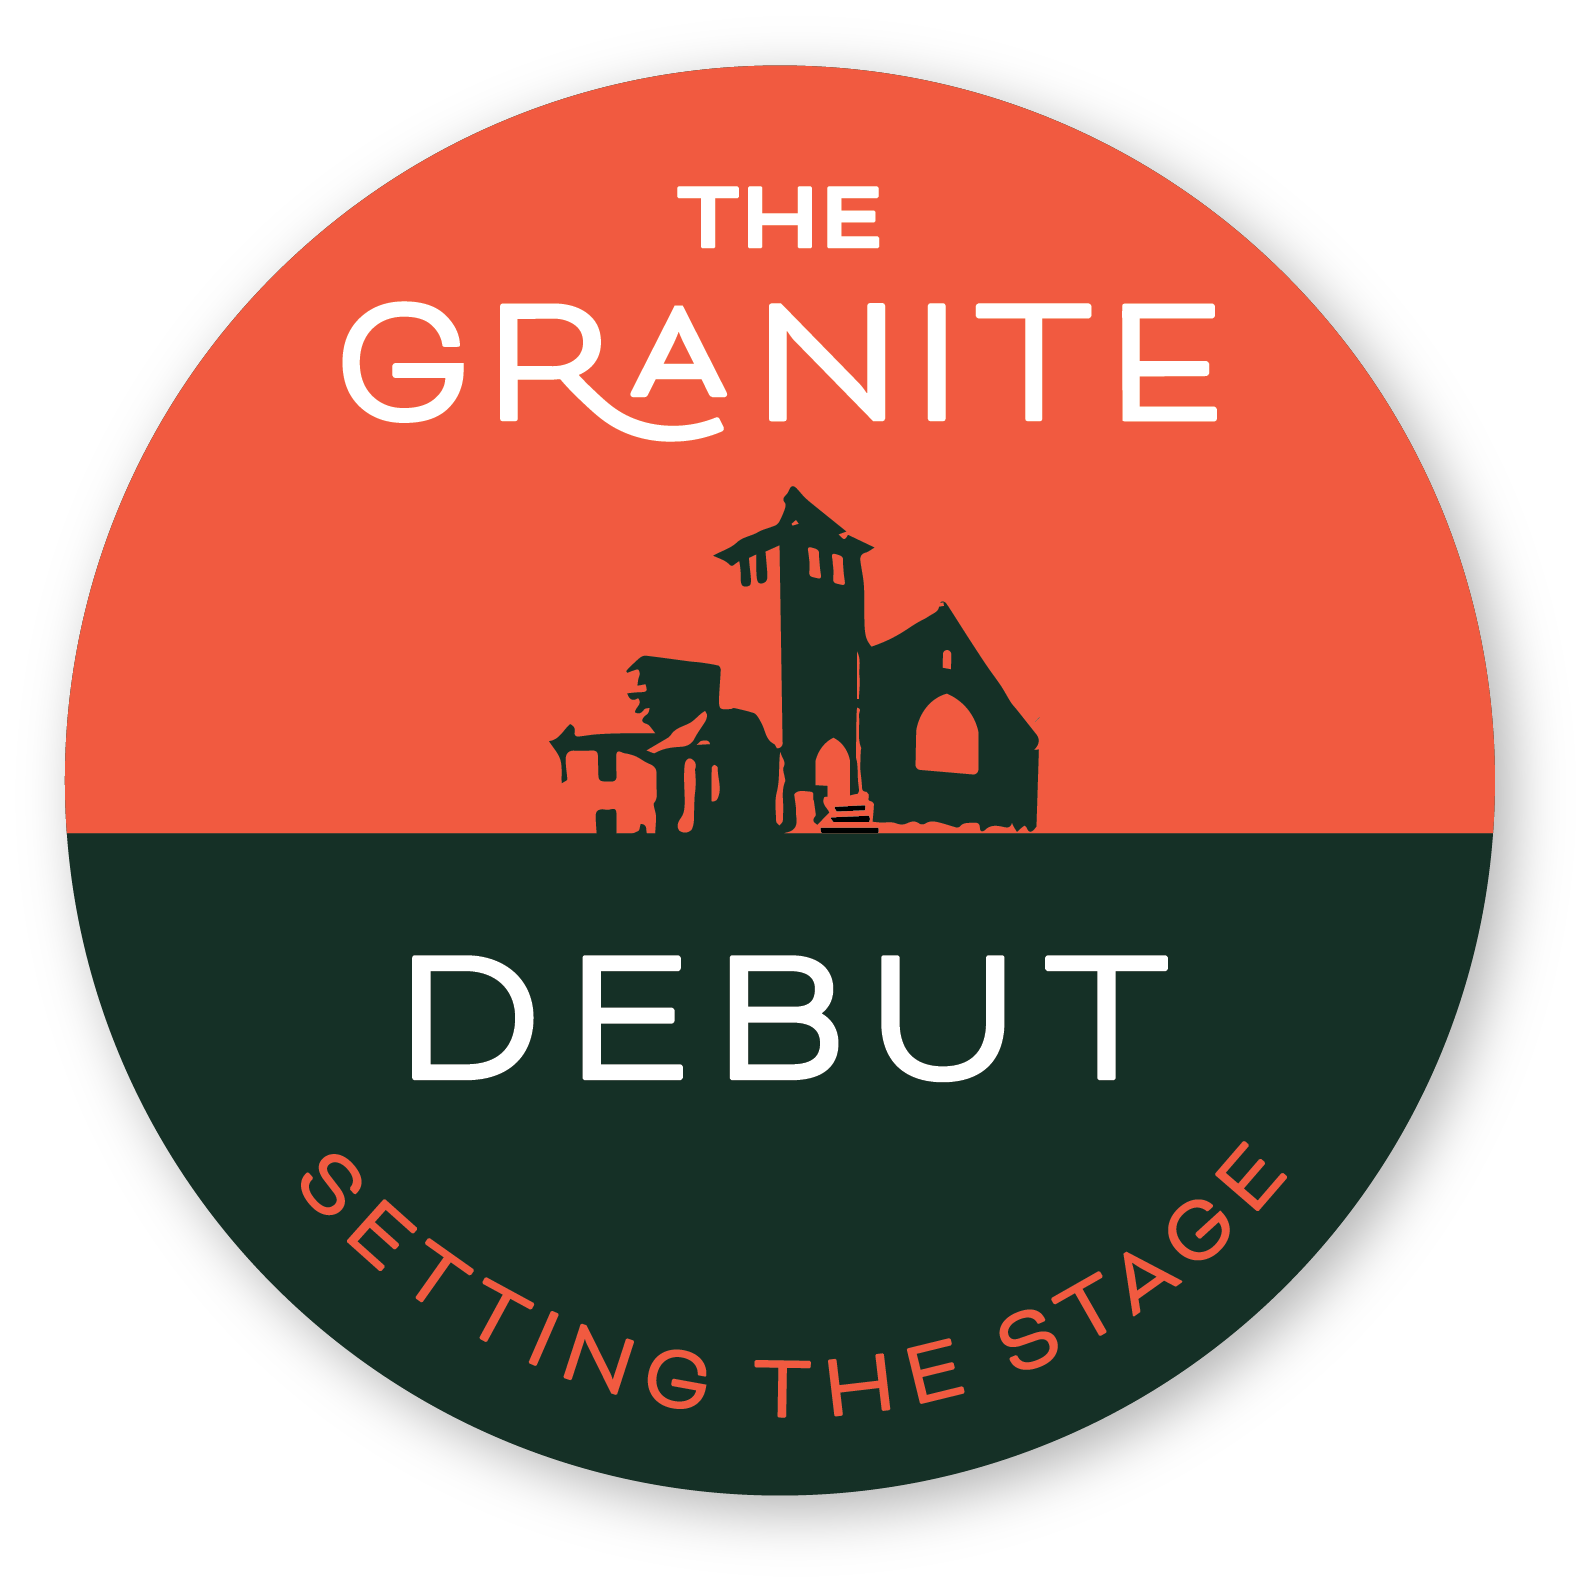 The Granite Debut Logo